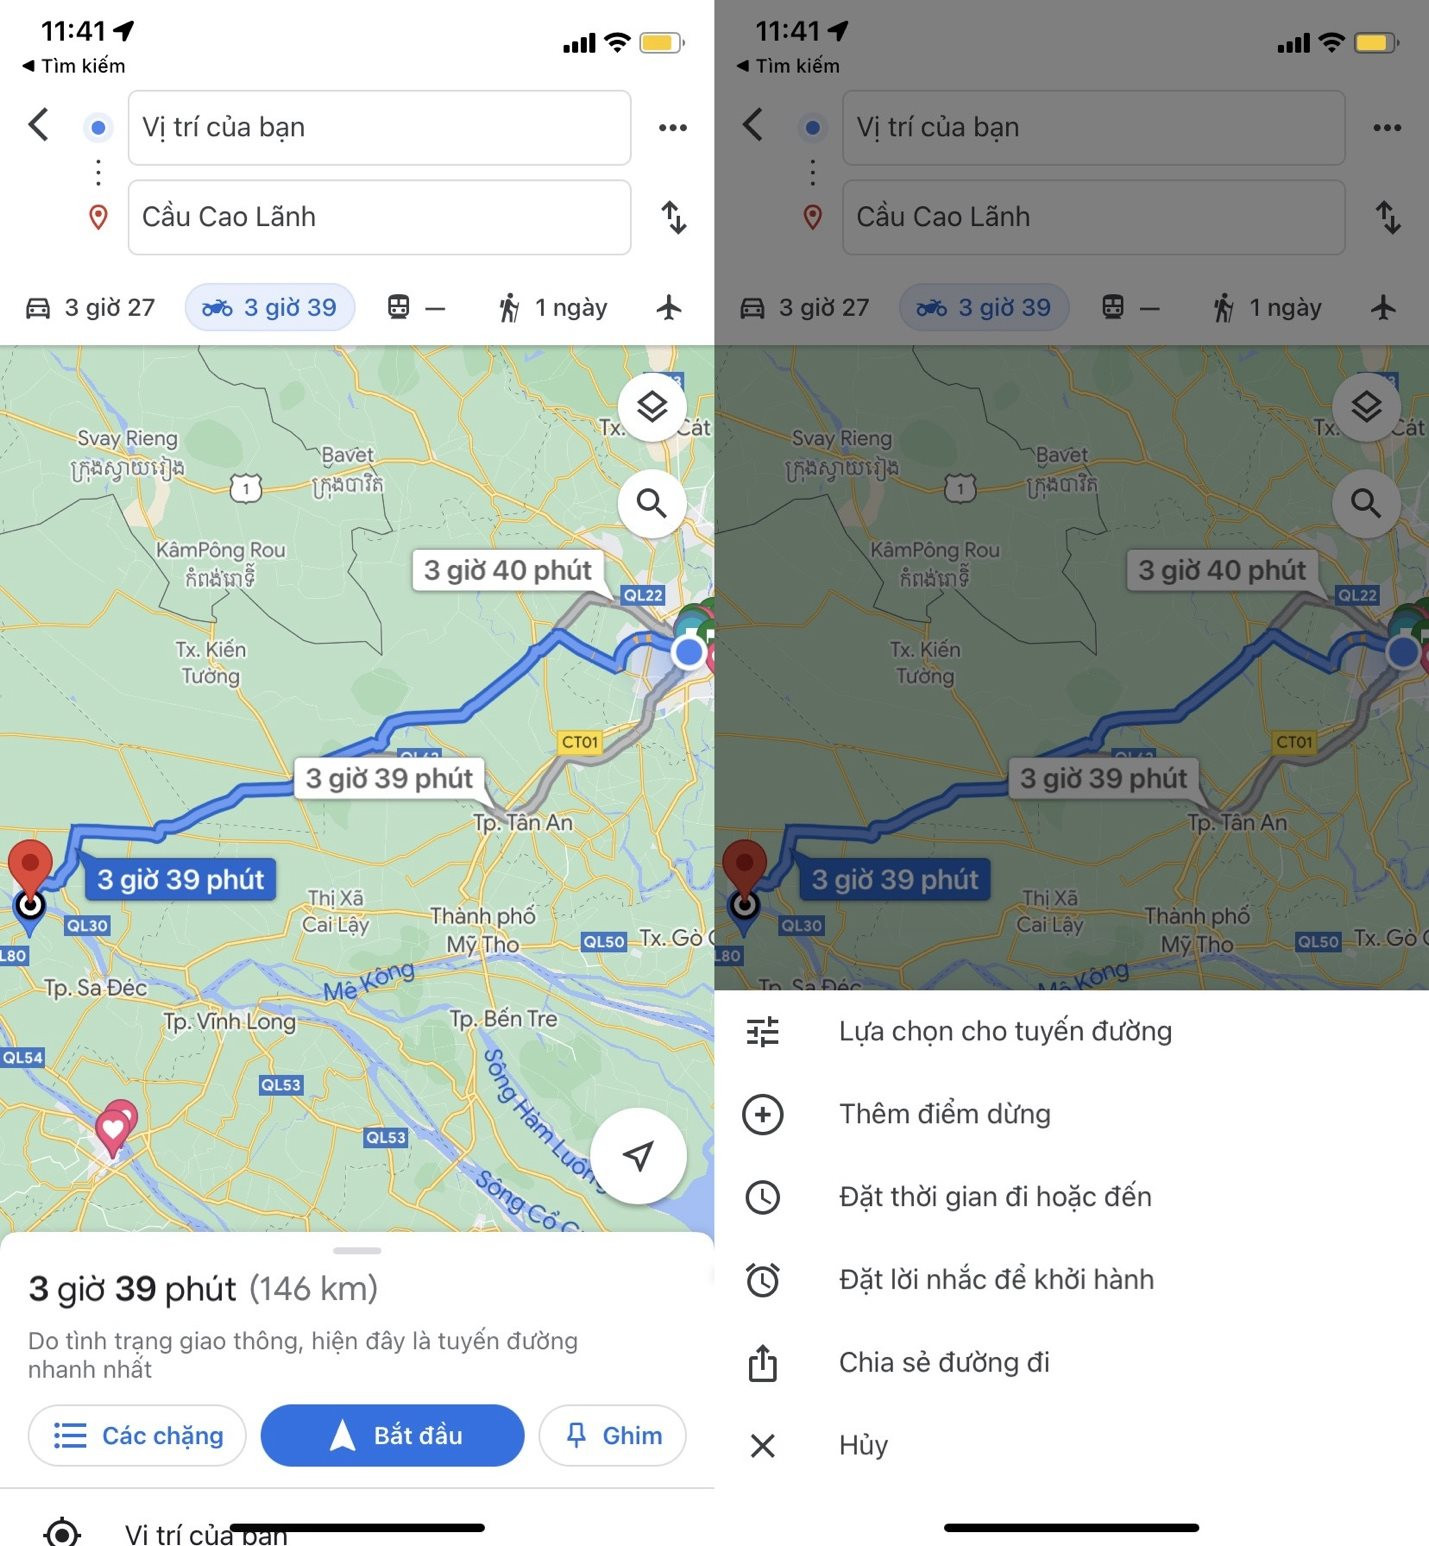 Tìm đường đi tránh cao tốc trên Google Maps: Từ năm 2024, bạn đã có thể sử dụng chức năng tìm đường đi tránh cao tốc trên Google Maps để luôn có được tuyến đường an toàn và thuận tiện nhất. Với những tính năng mới, hành trình của bạn đã trở nên đơn giản hơn bao giờ hết.